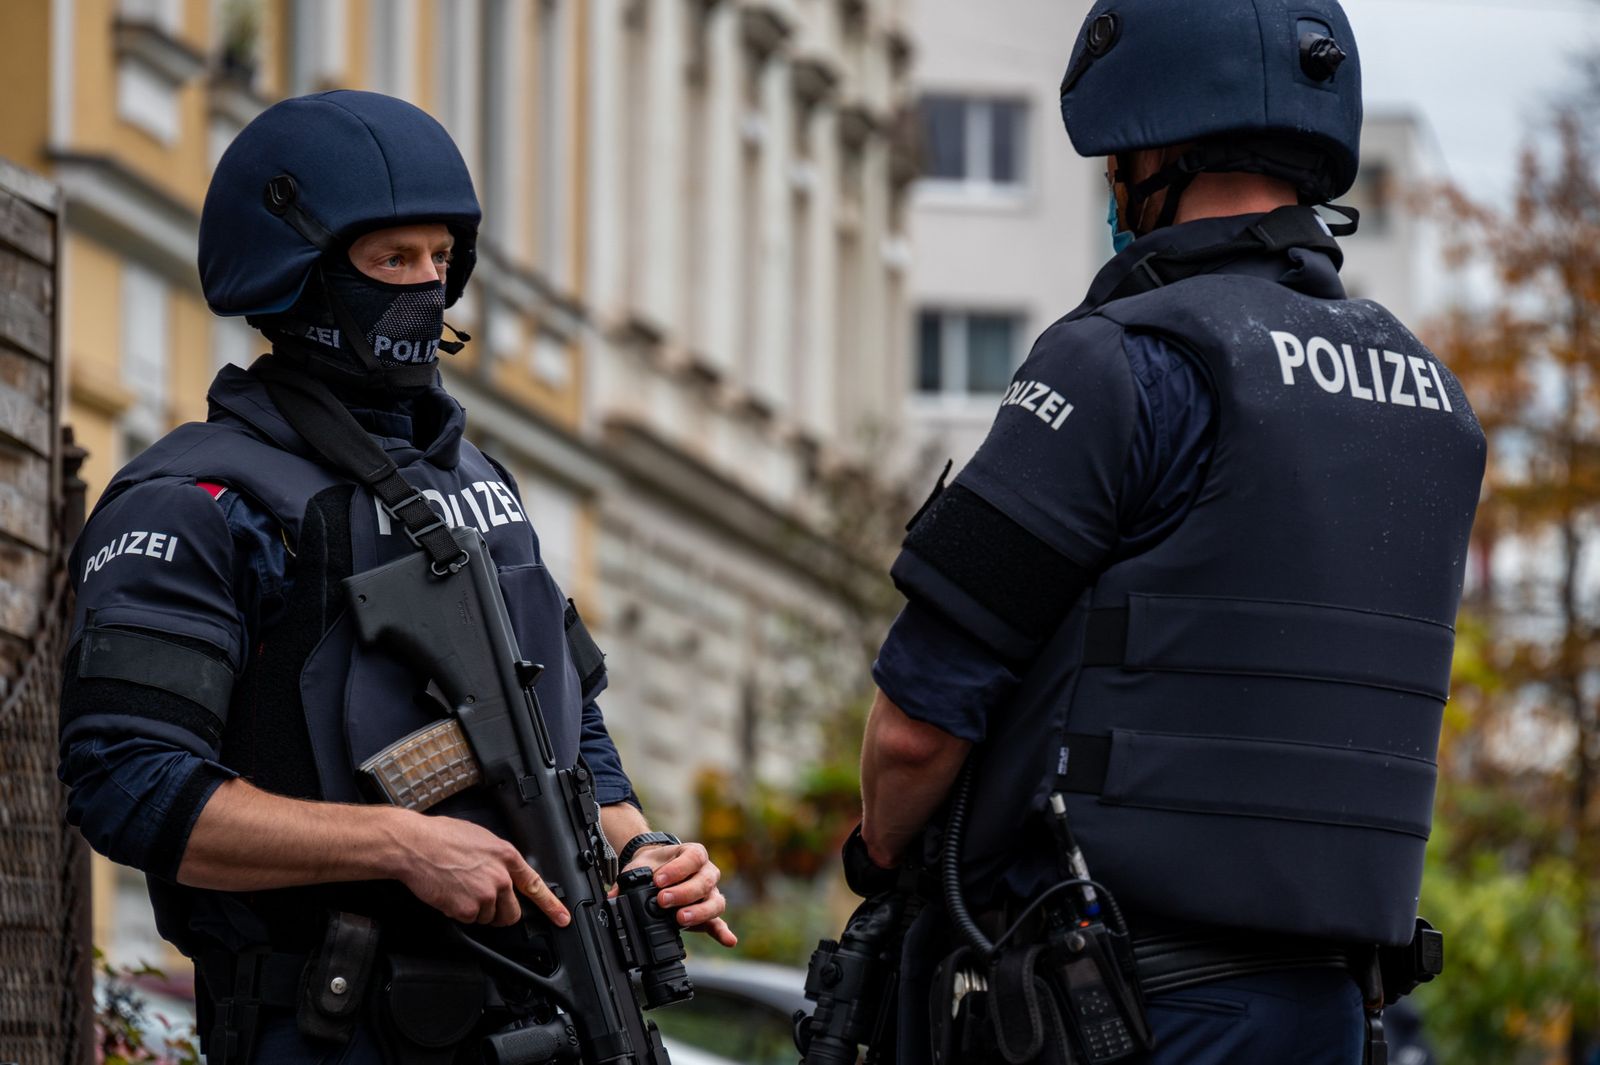  مكافحة الإرهاب ـ النمسا "النموذج الأمثل" في التصدي للإرهابيين